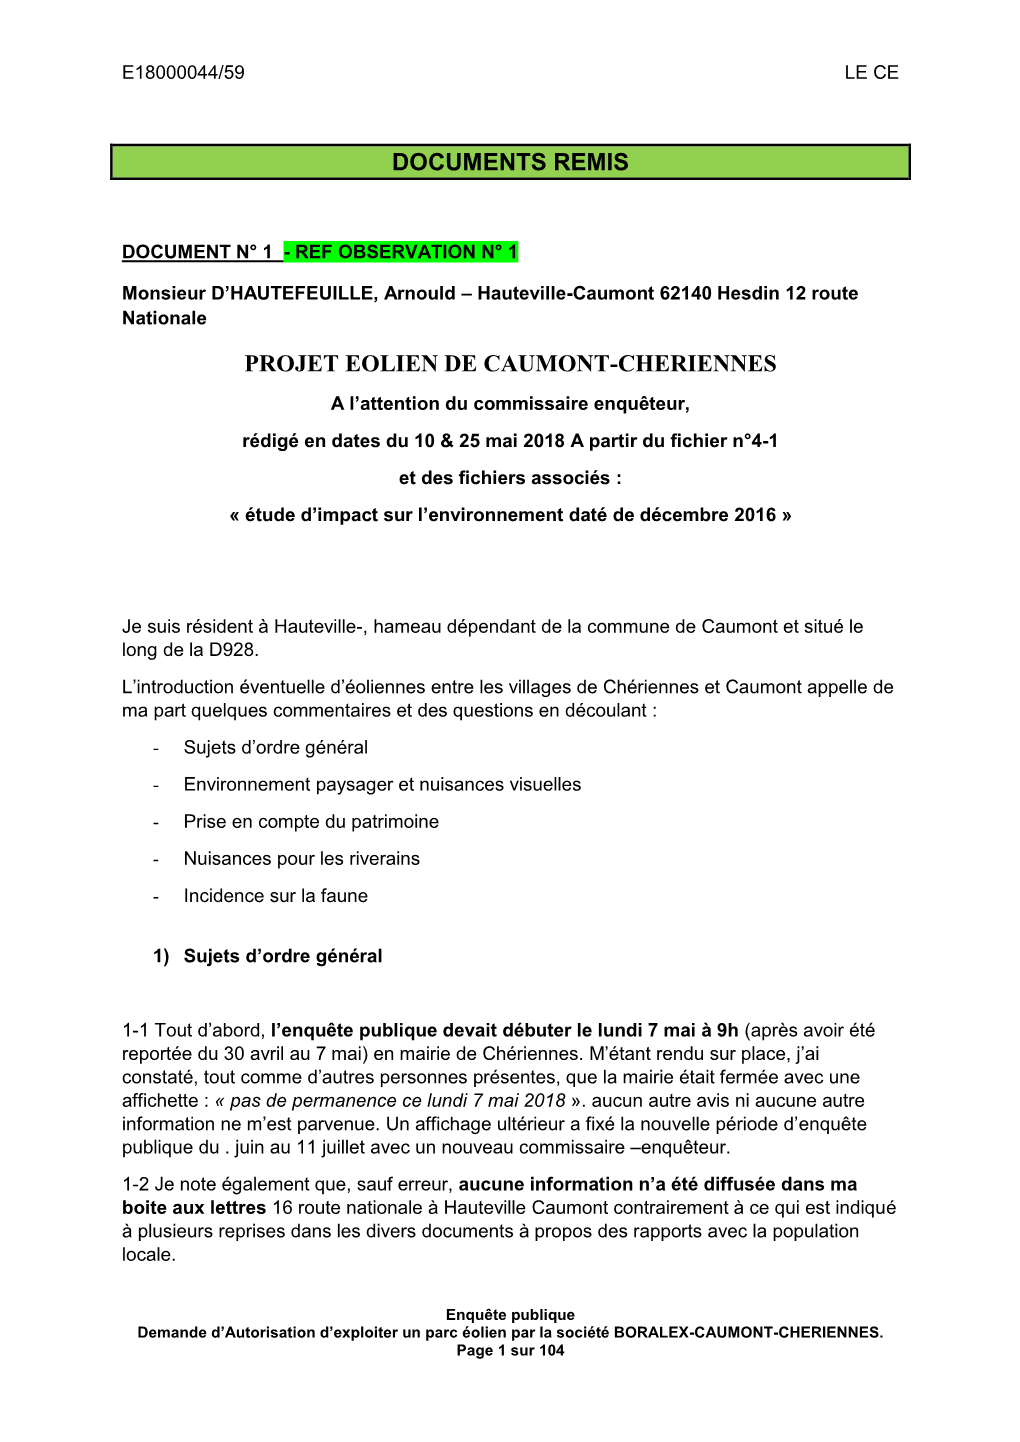 Documents Remis Projet Eolien De Caumont